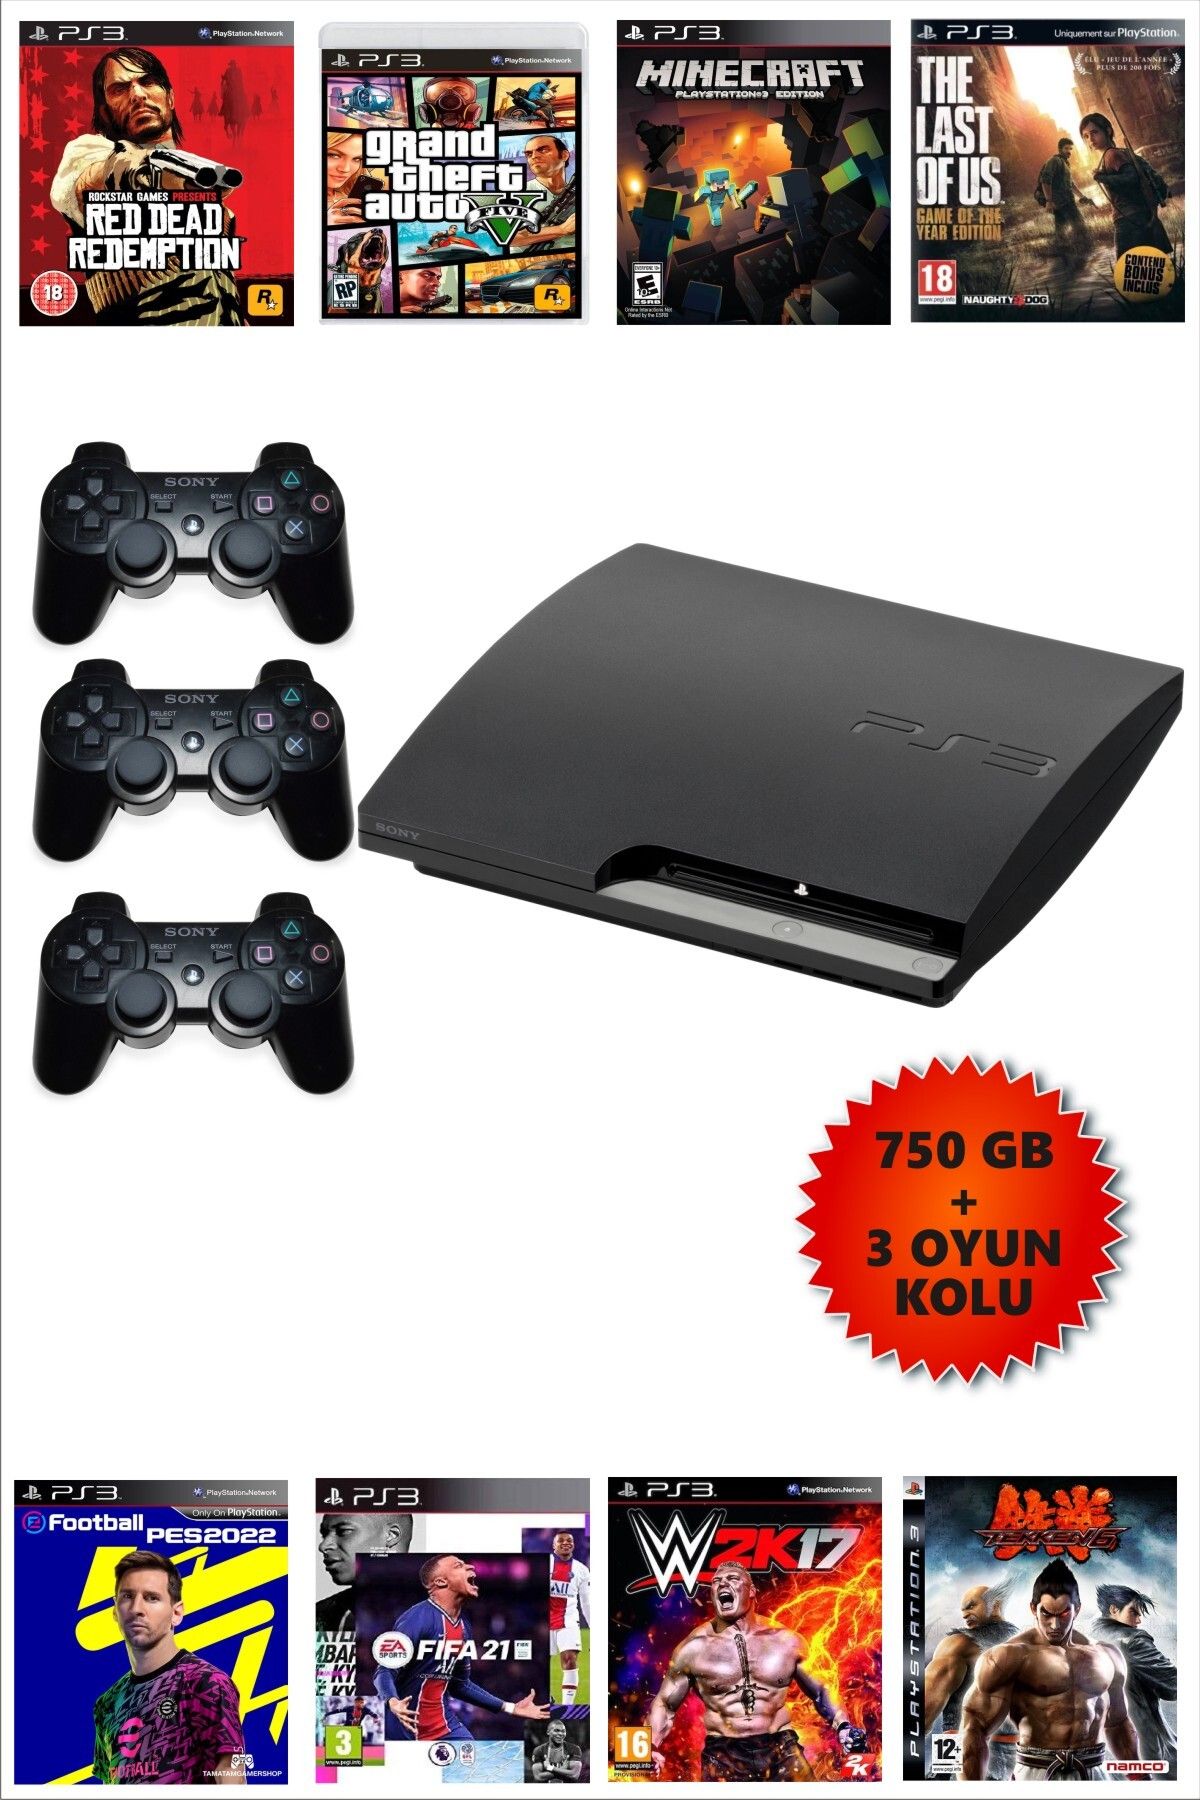 Sony Playstation 3 Slim 750GB + 3 Oyun Kolu + 80 Oyunlu + Garantili Teşhir Ürünü (Liste Resimlerde Var)